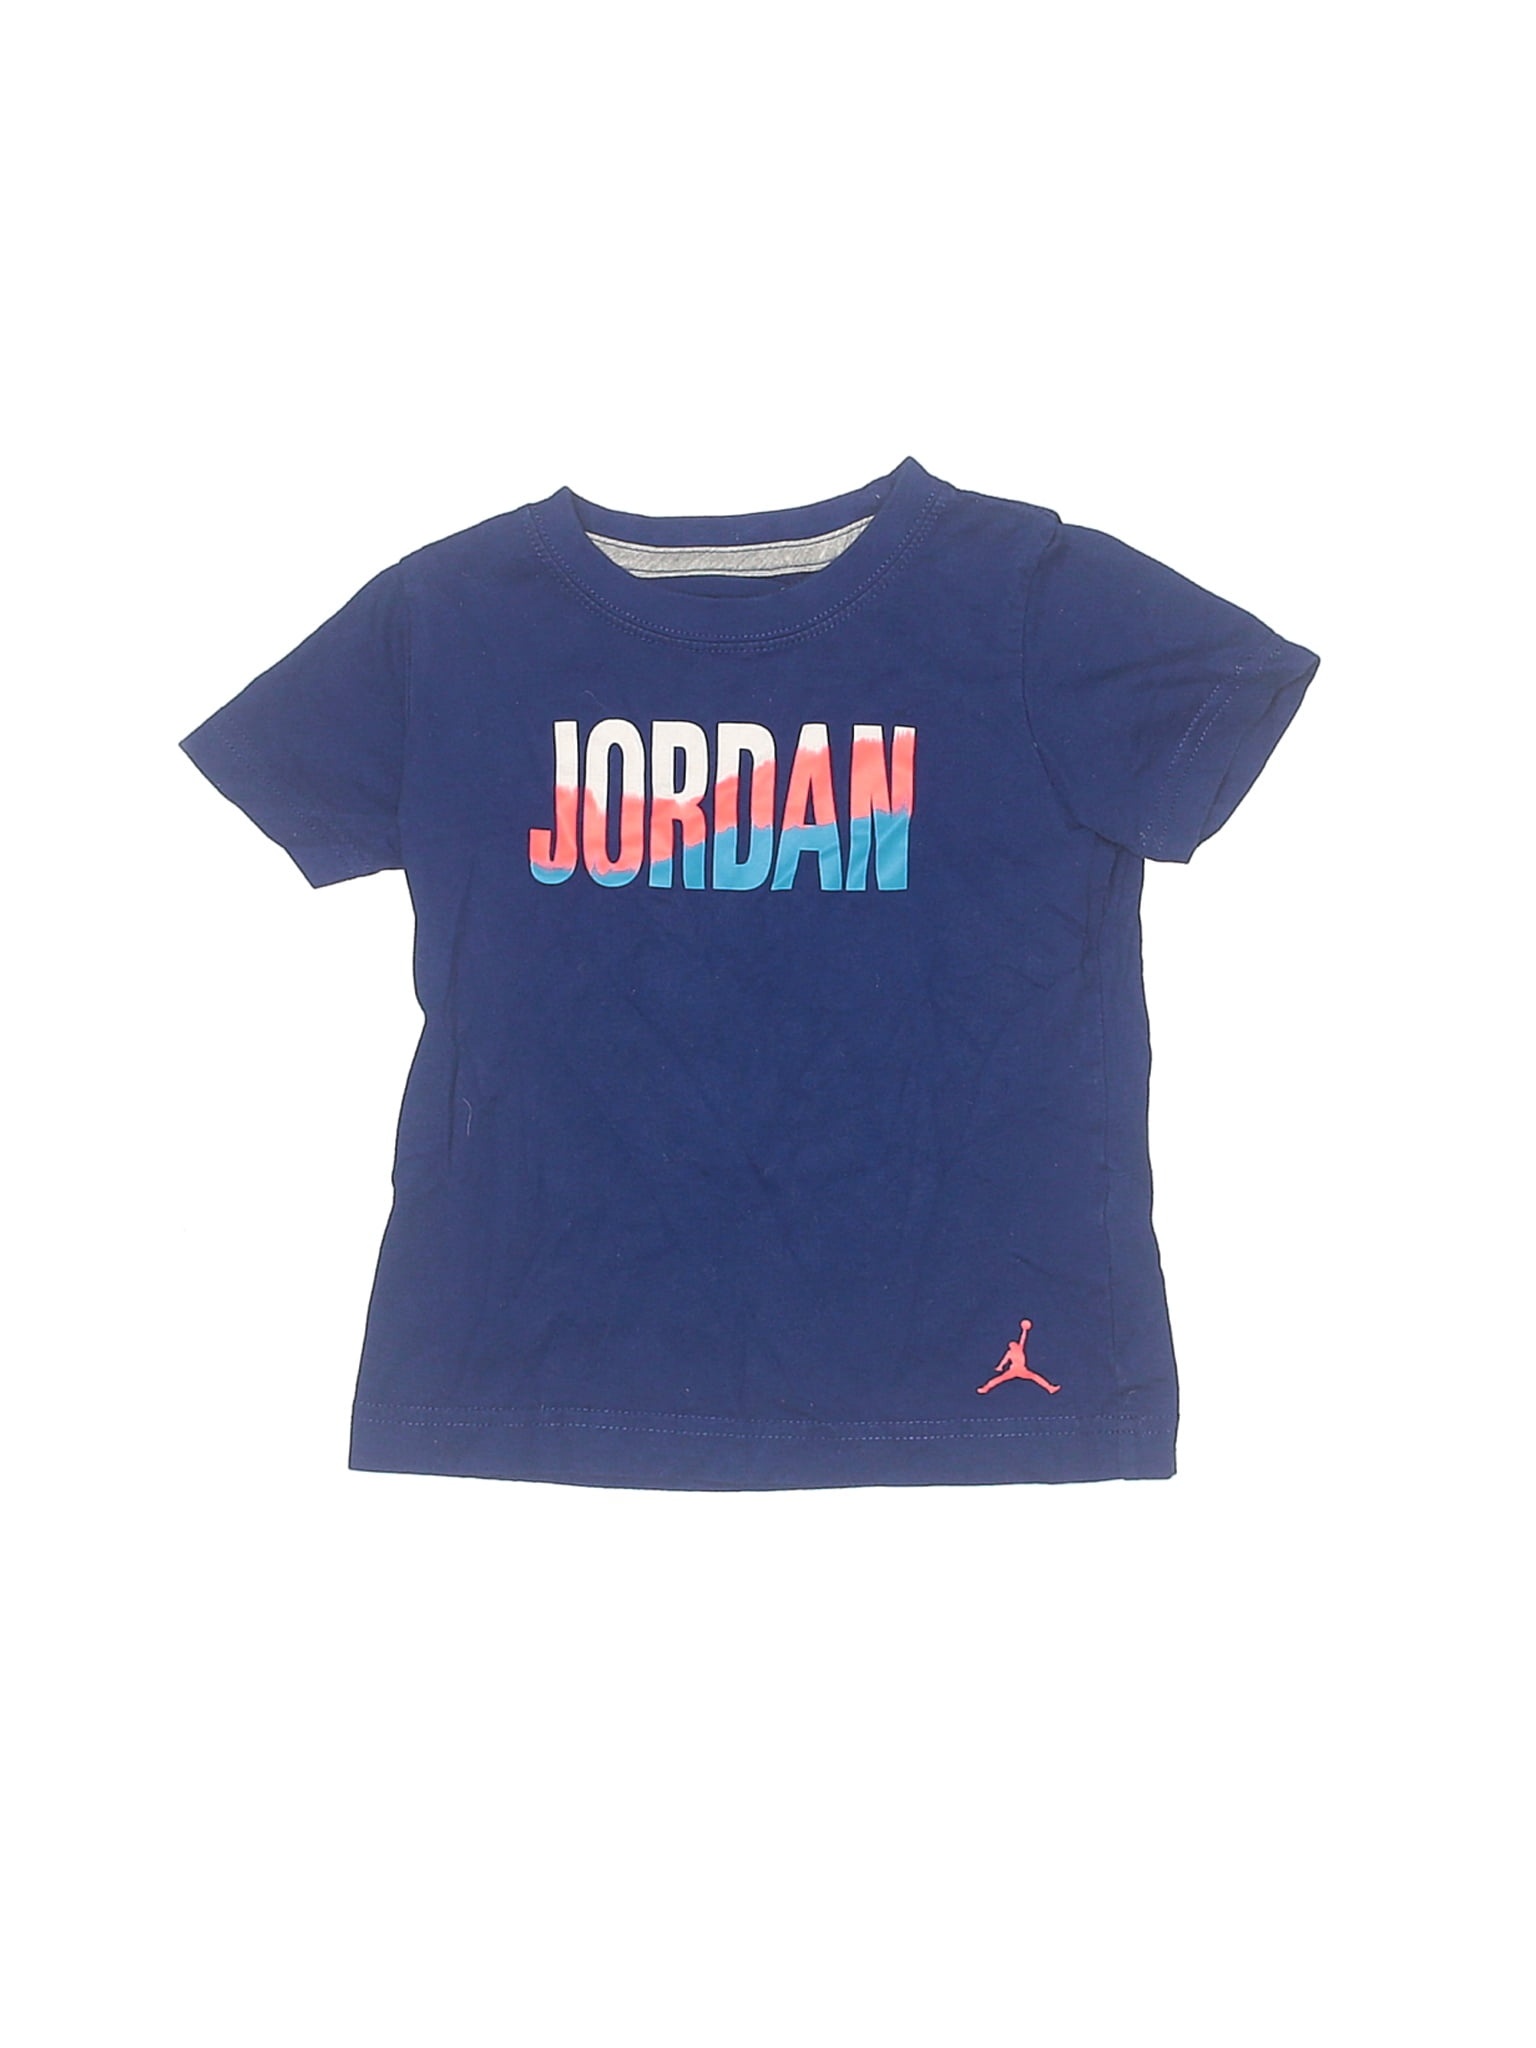 3t jordan clothes